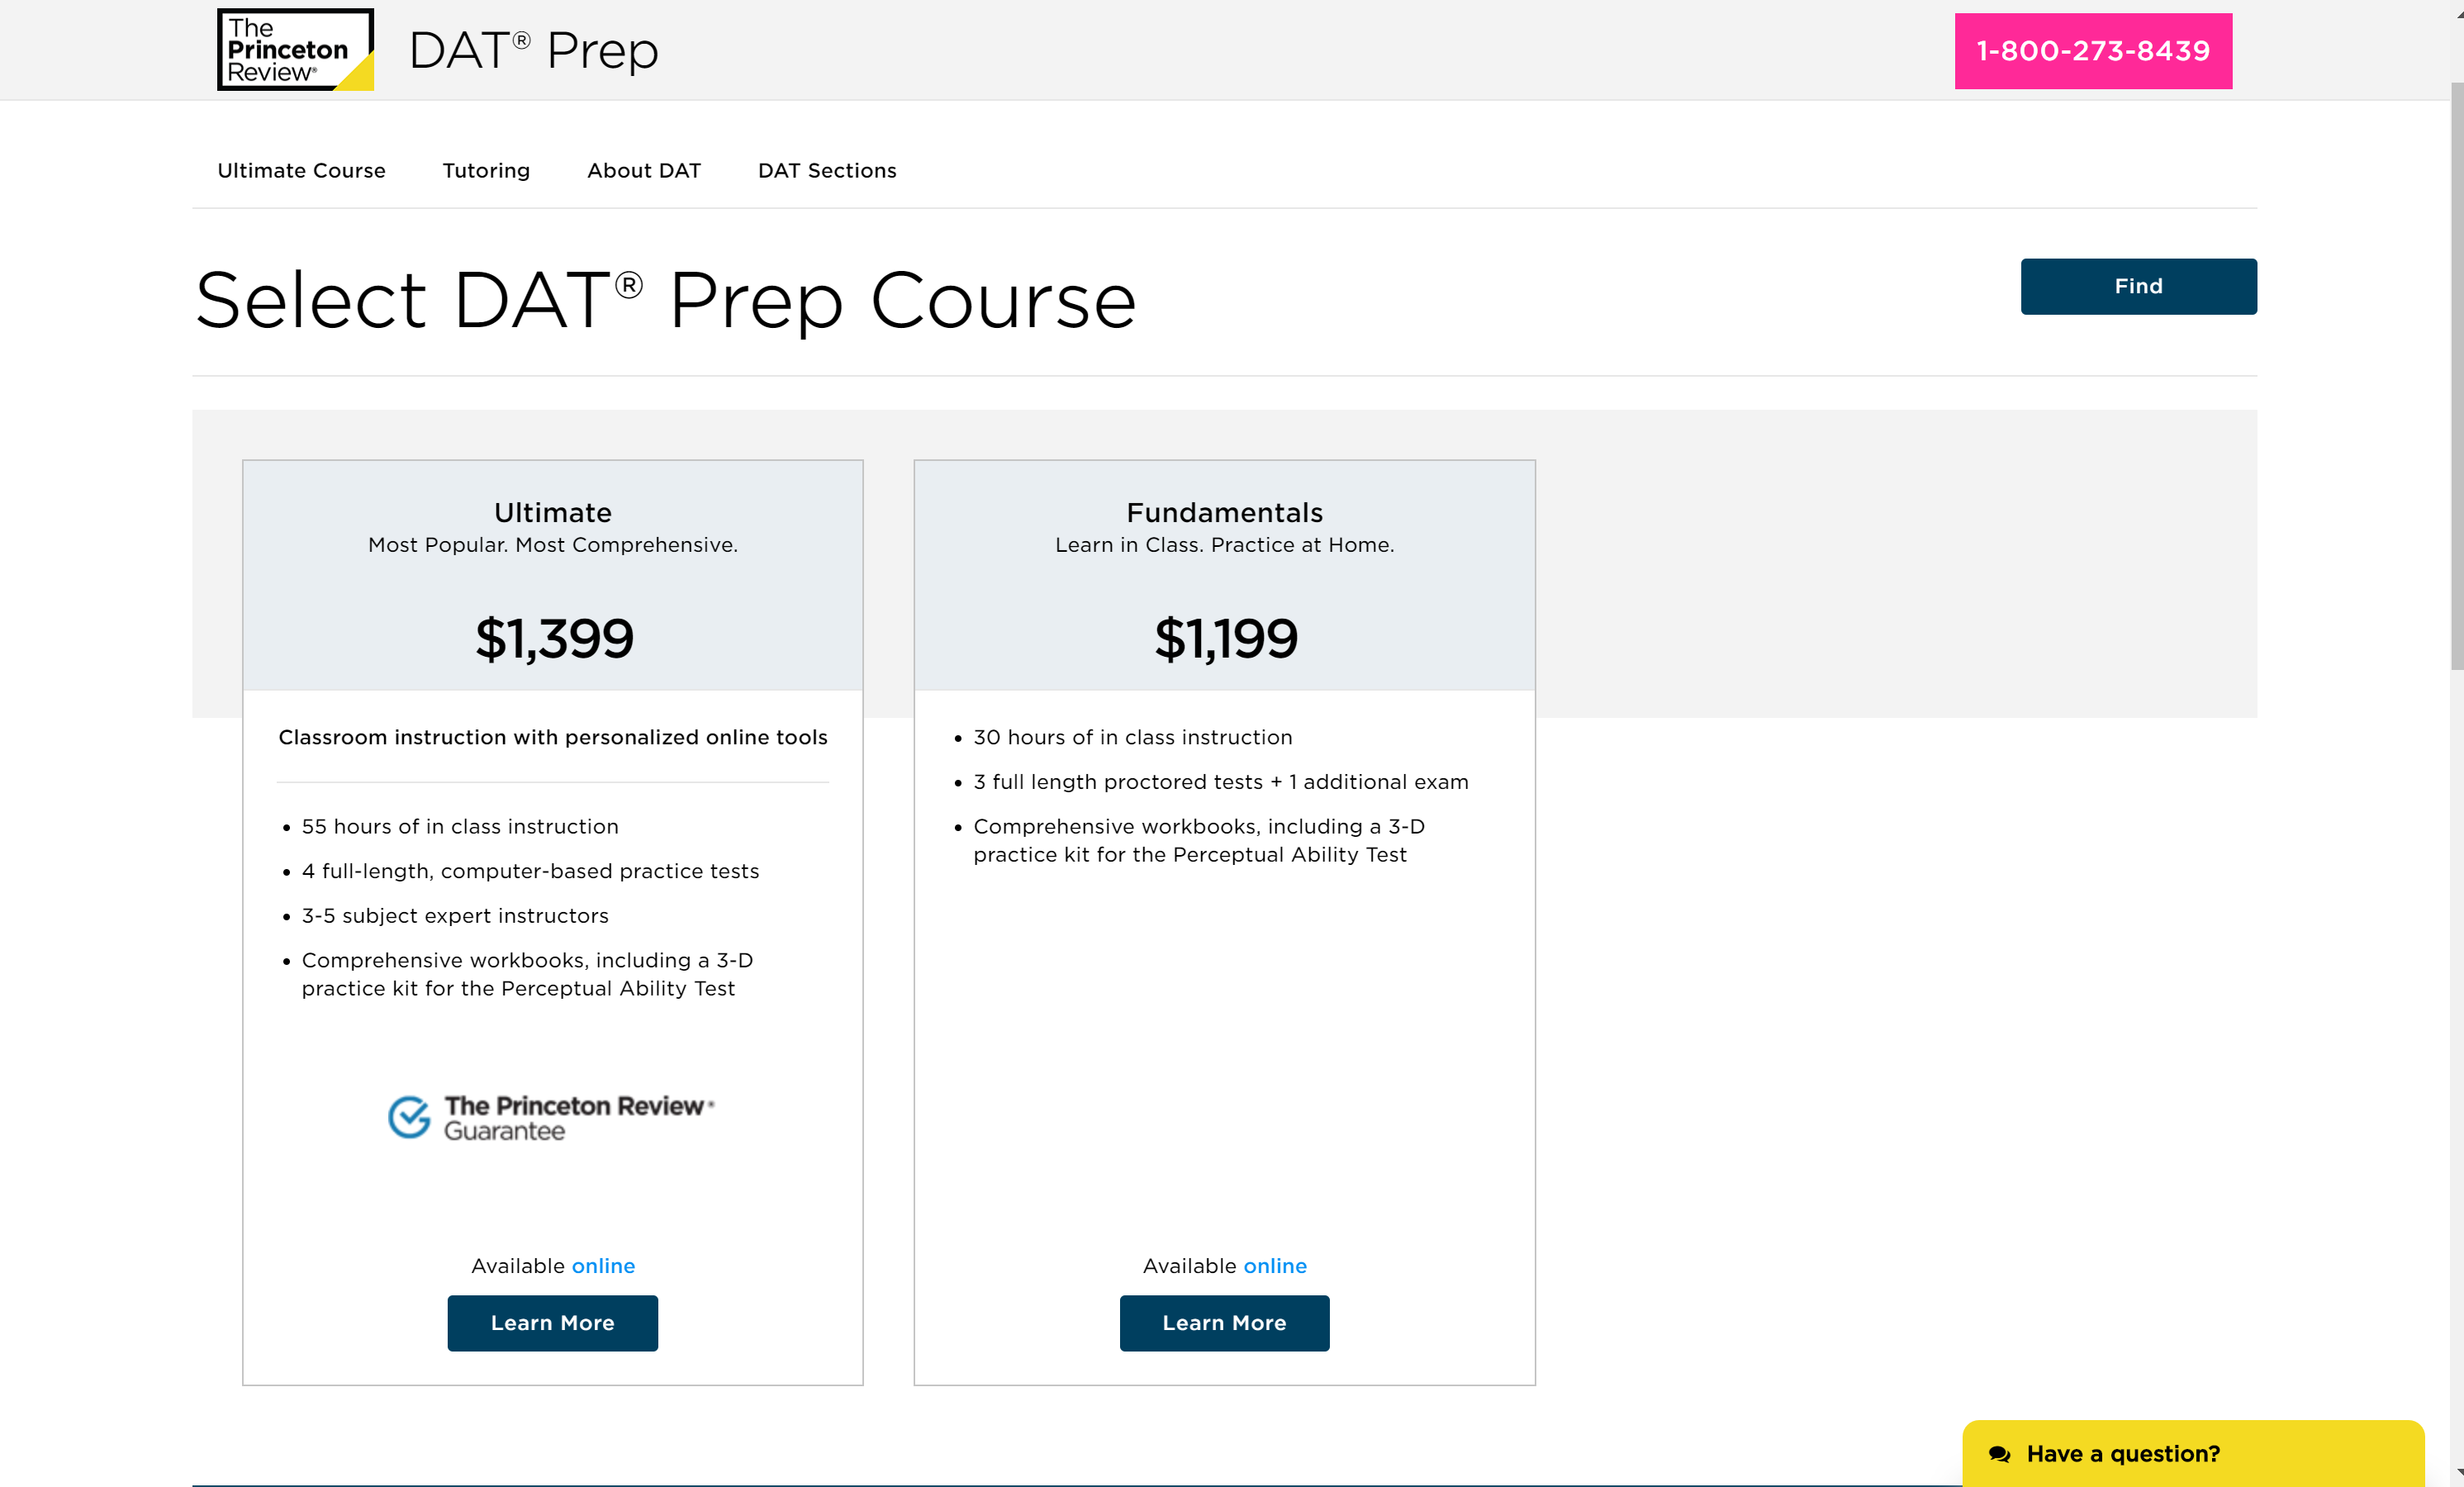 DAT Prep courses review